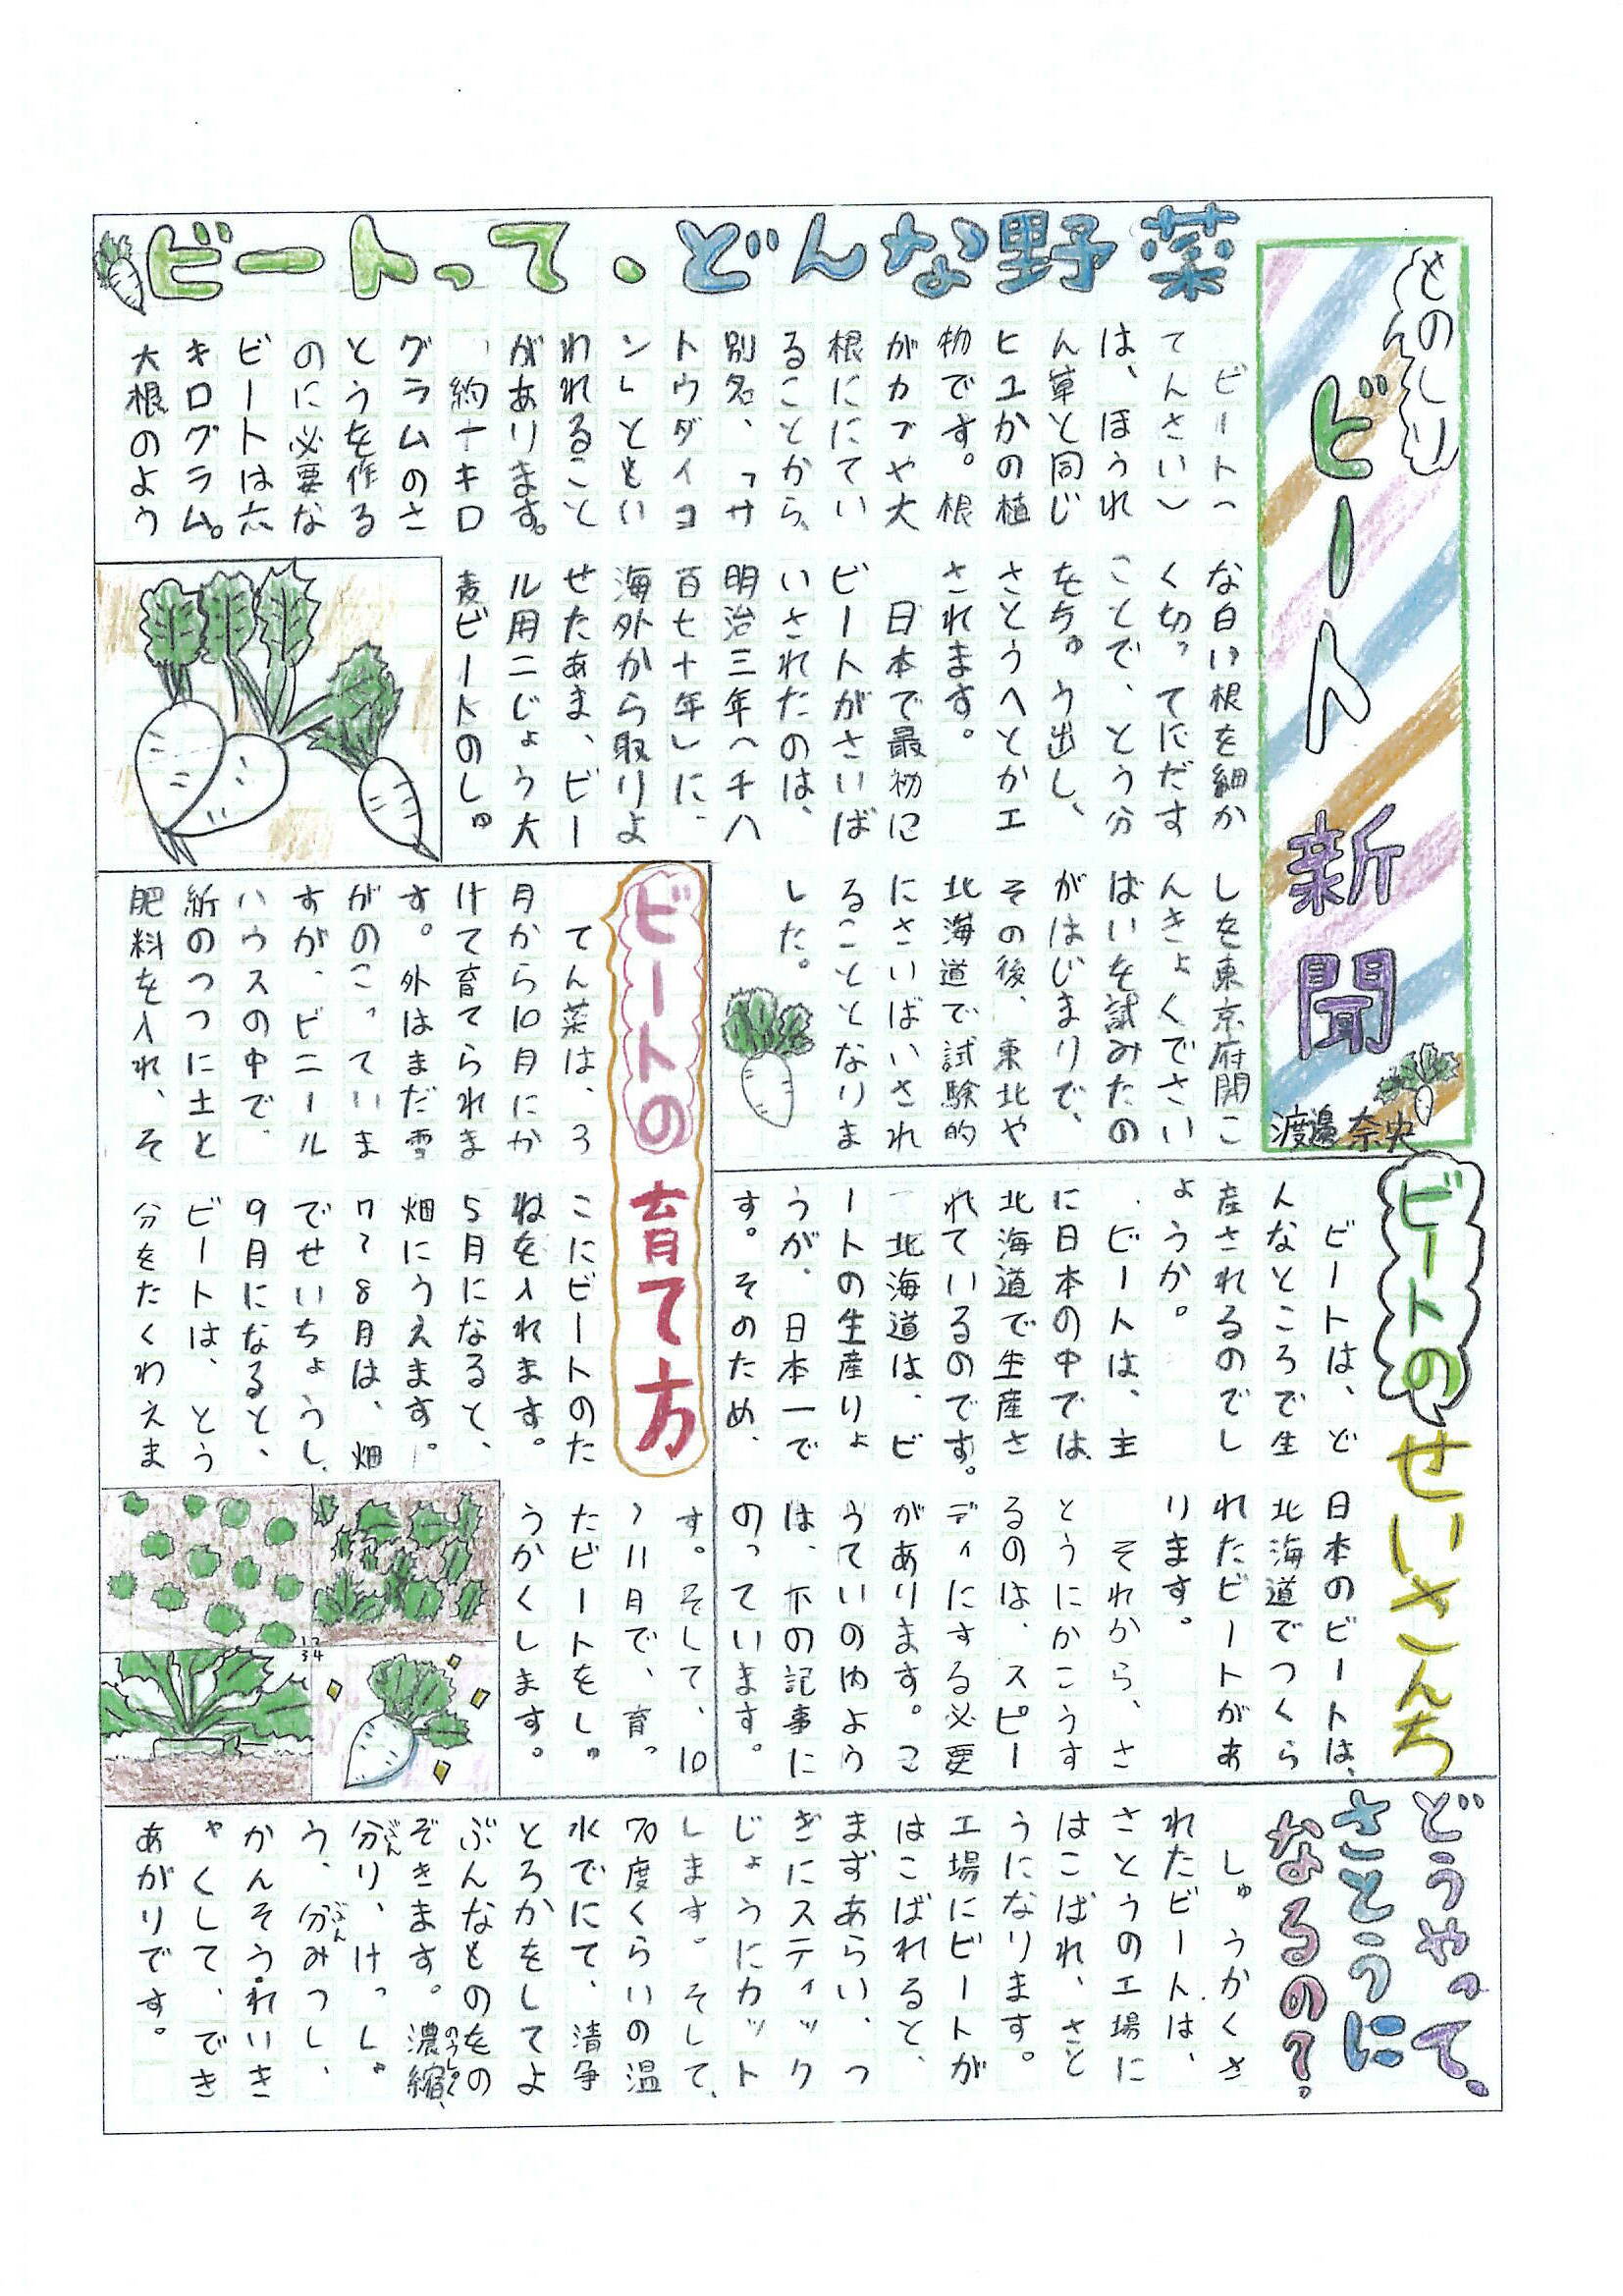 ビート新聞渡邊 奈央 JPG (JPG 554KB)